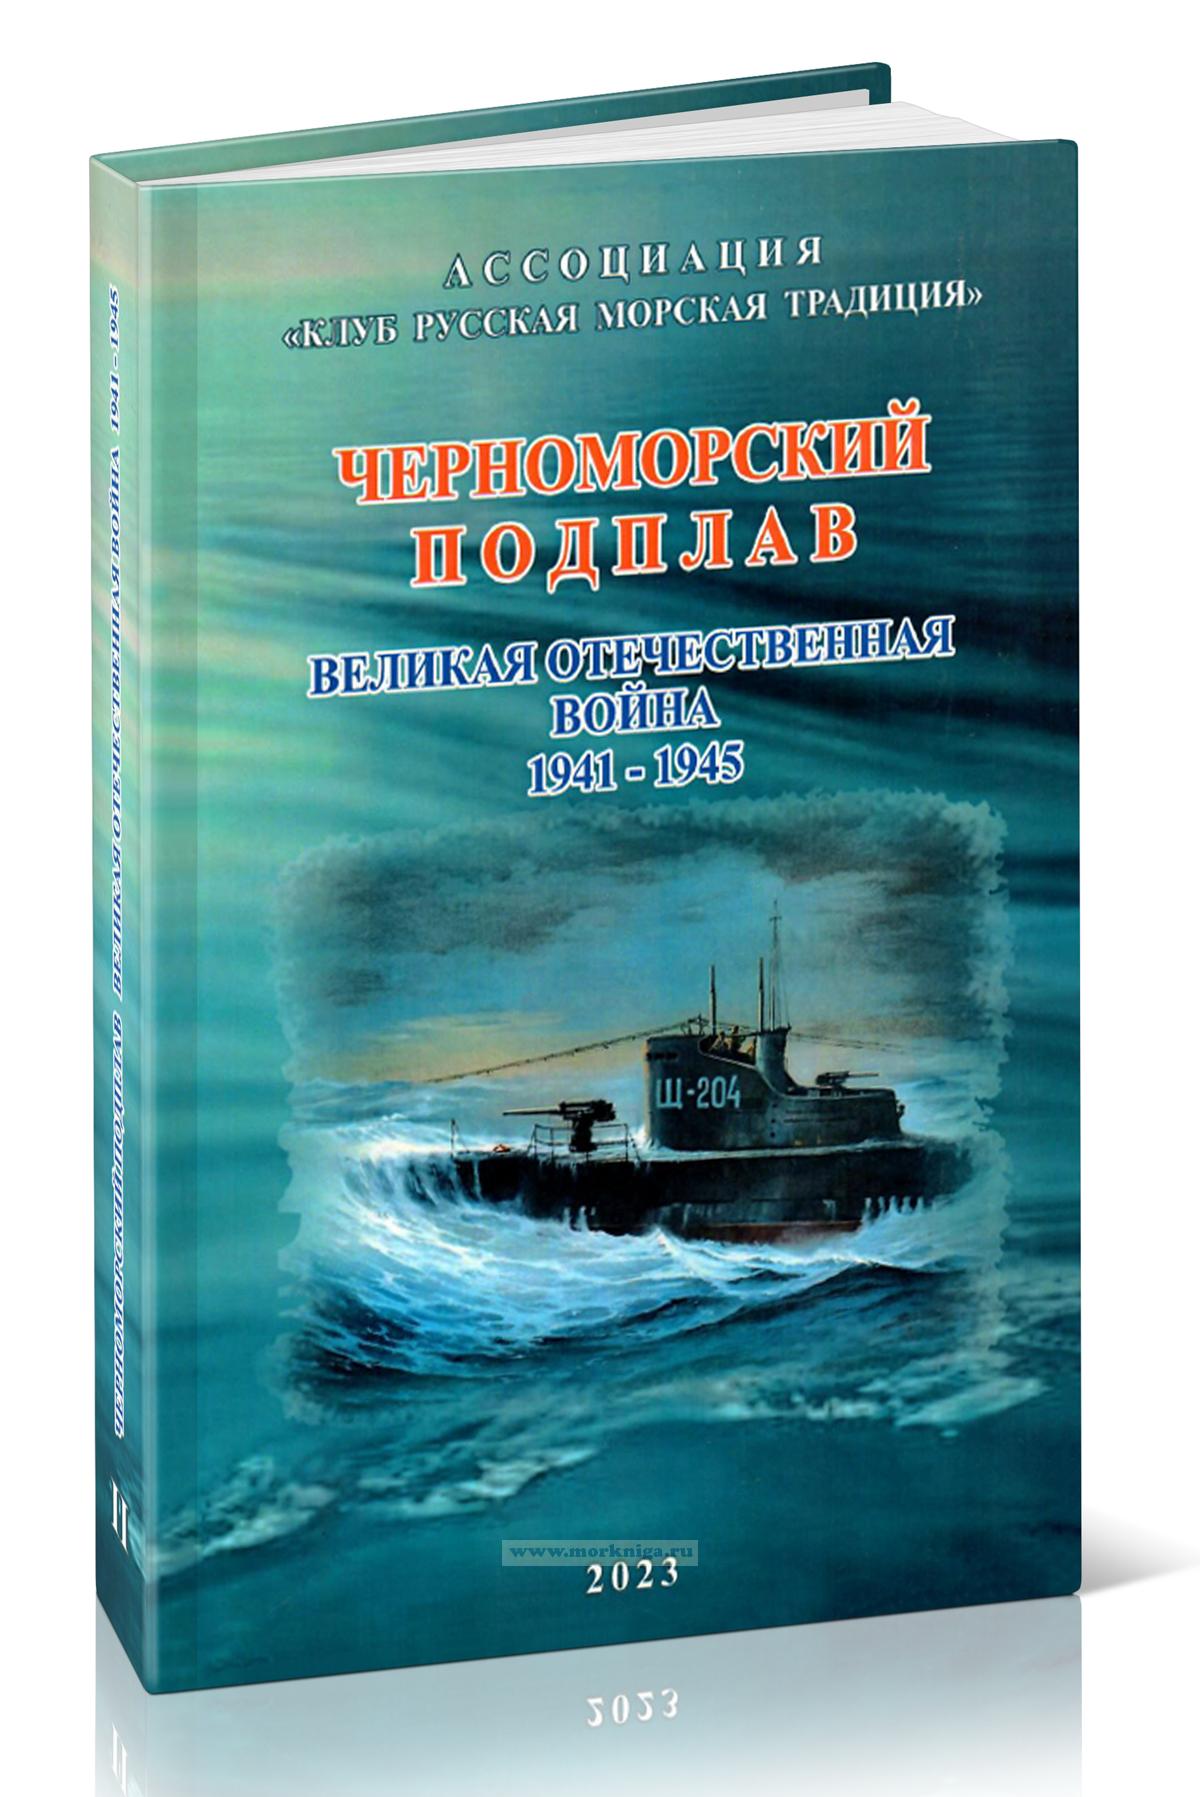 Черноморский Подплав. Великая Отечественная война 1941-1945